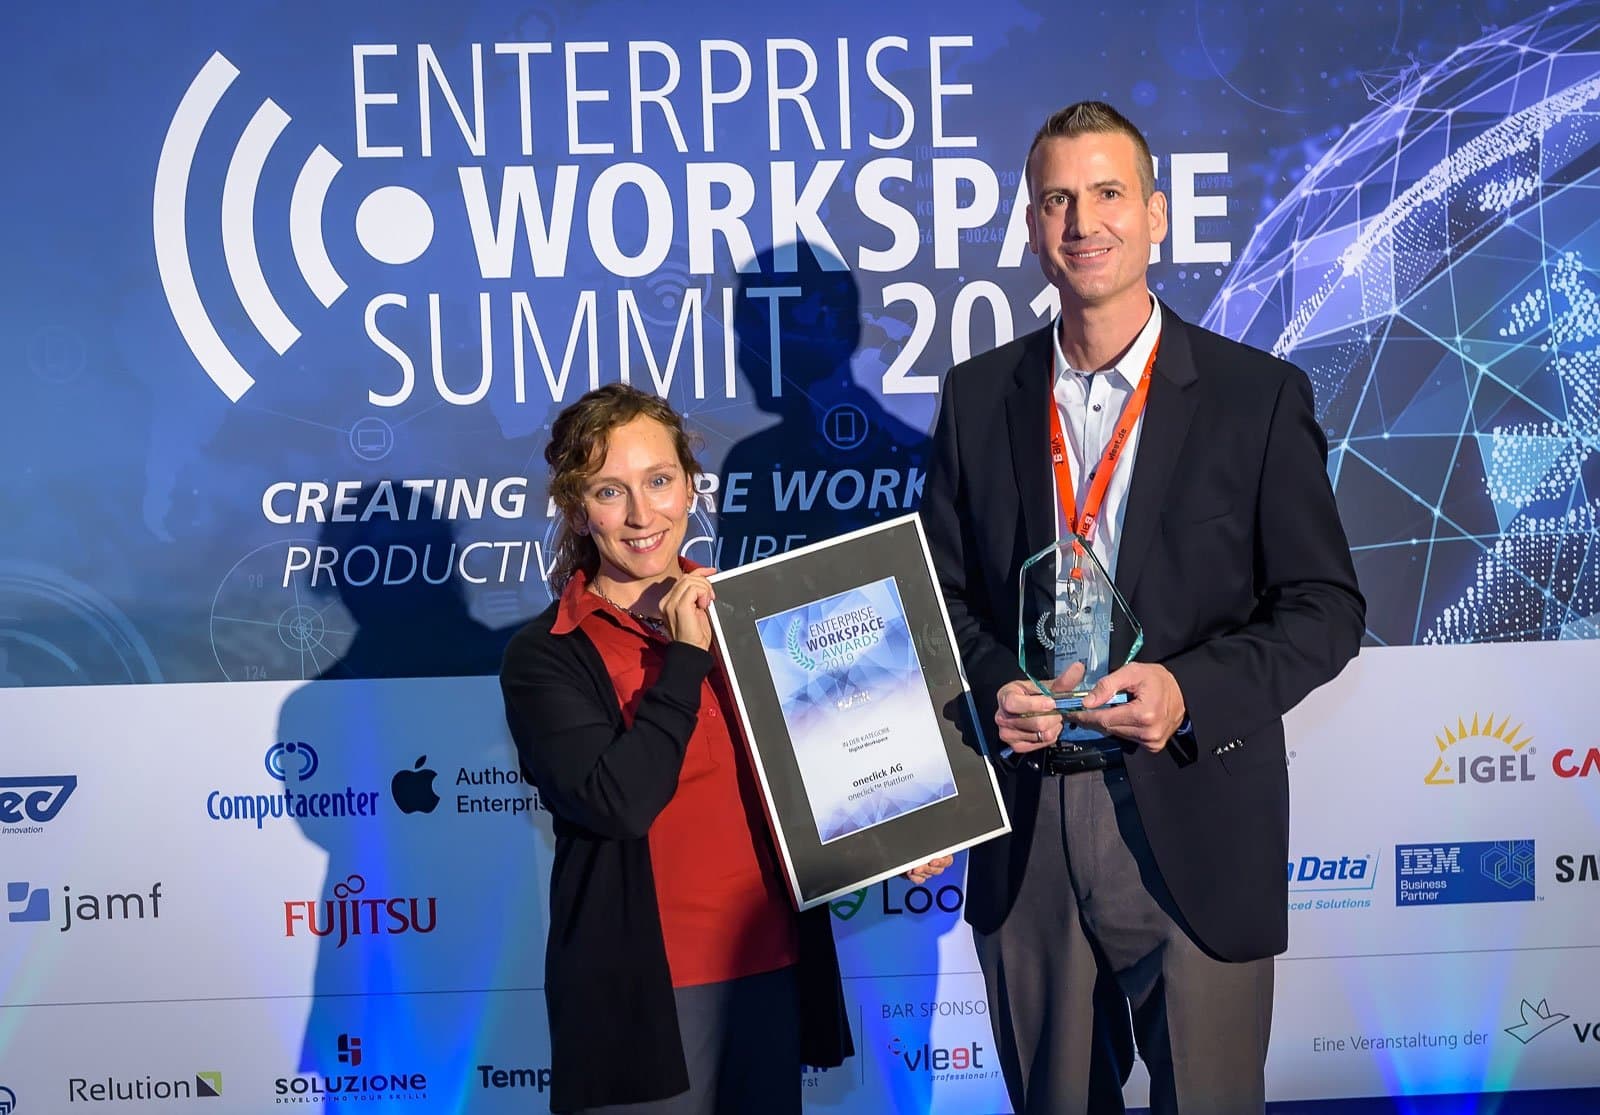 oneclick gewinnt Platin bei den Enterprise Workspace Awards 2019